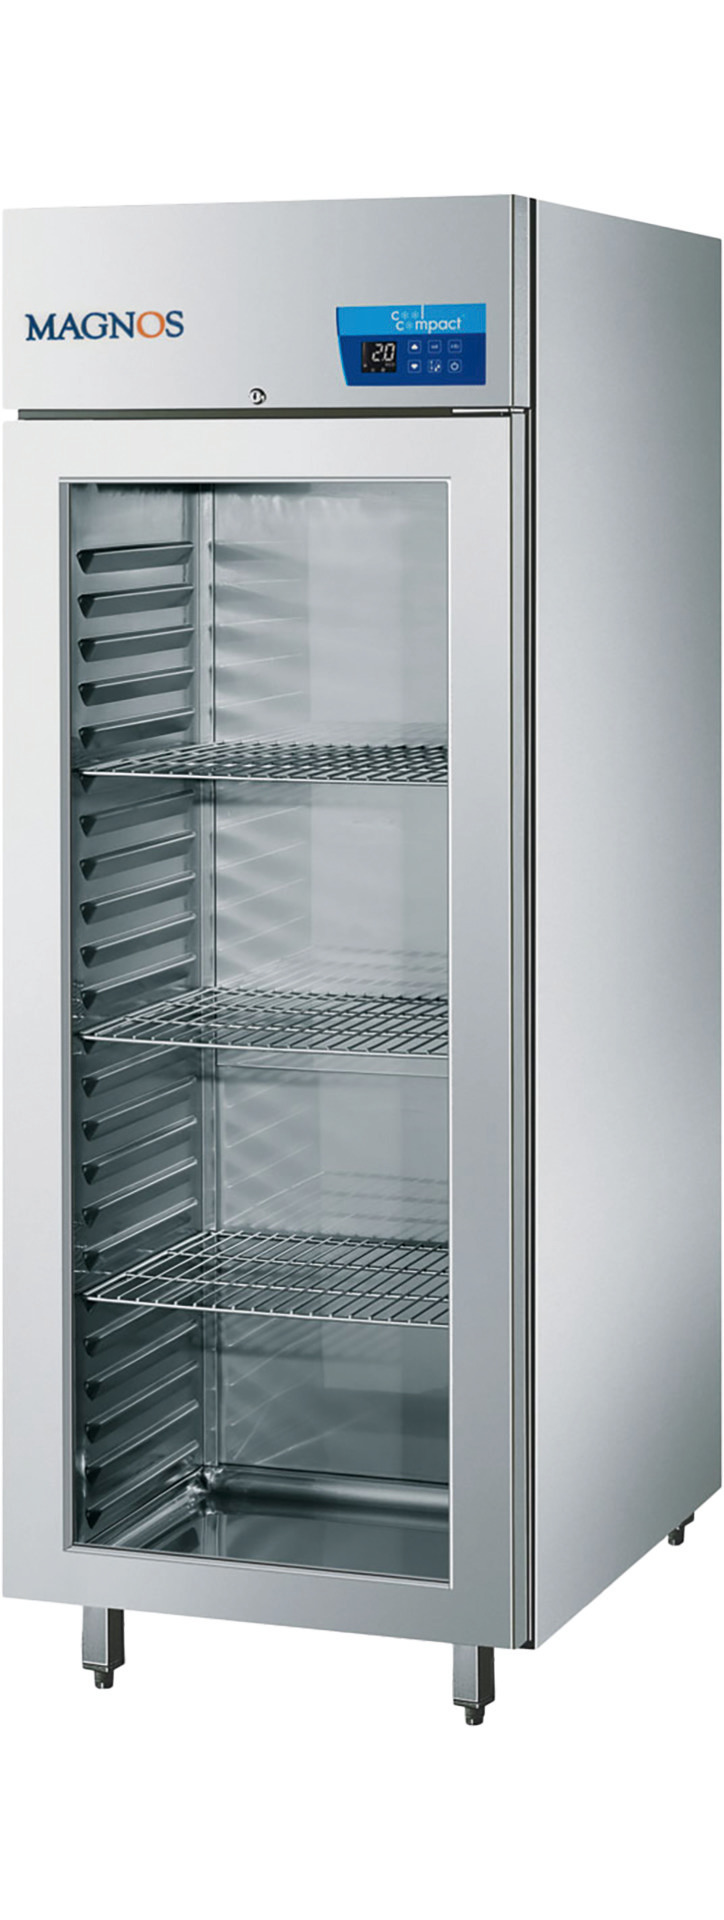 Umluft-Glastürtiefkühlschrank  23 x GN 2/1 / steckerfertig